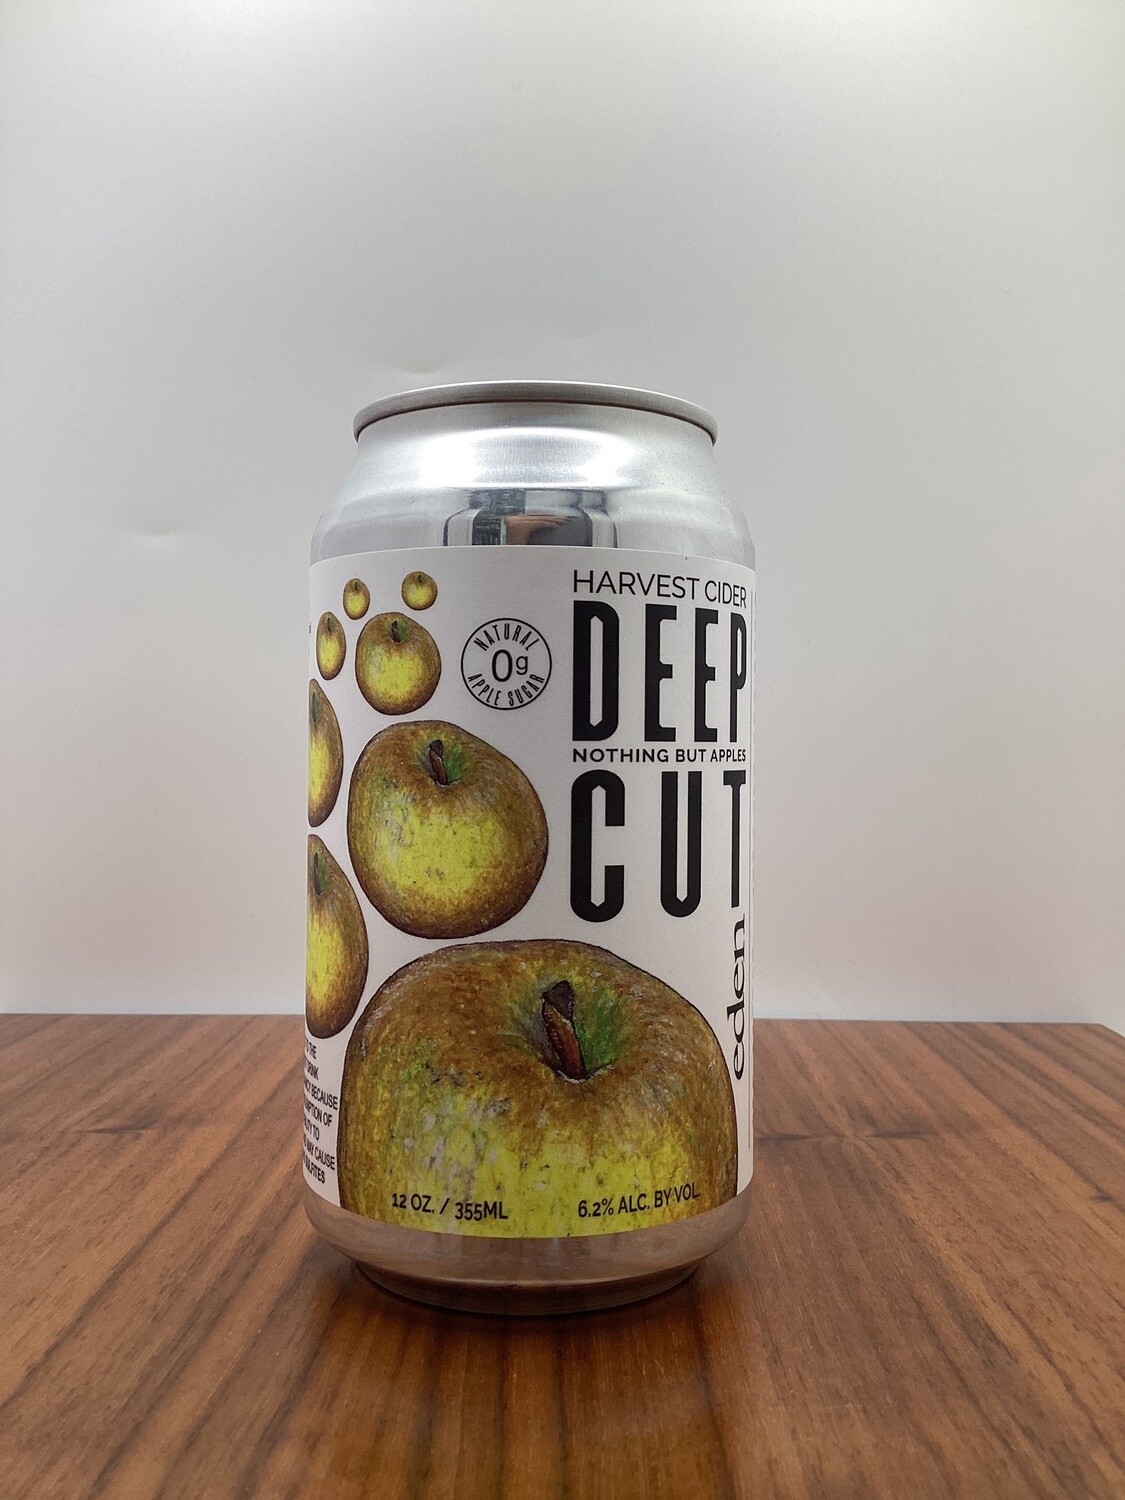 Eden Cider Deep Cut